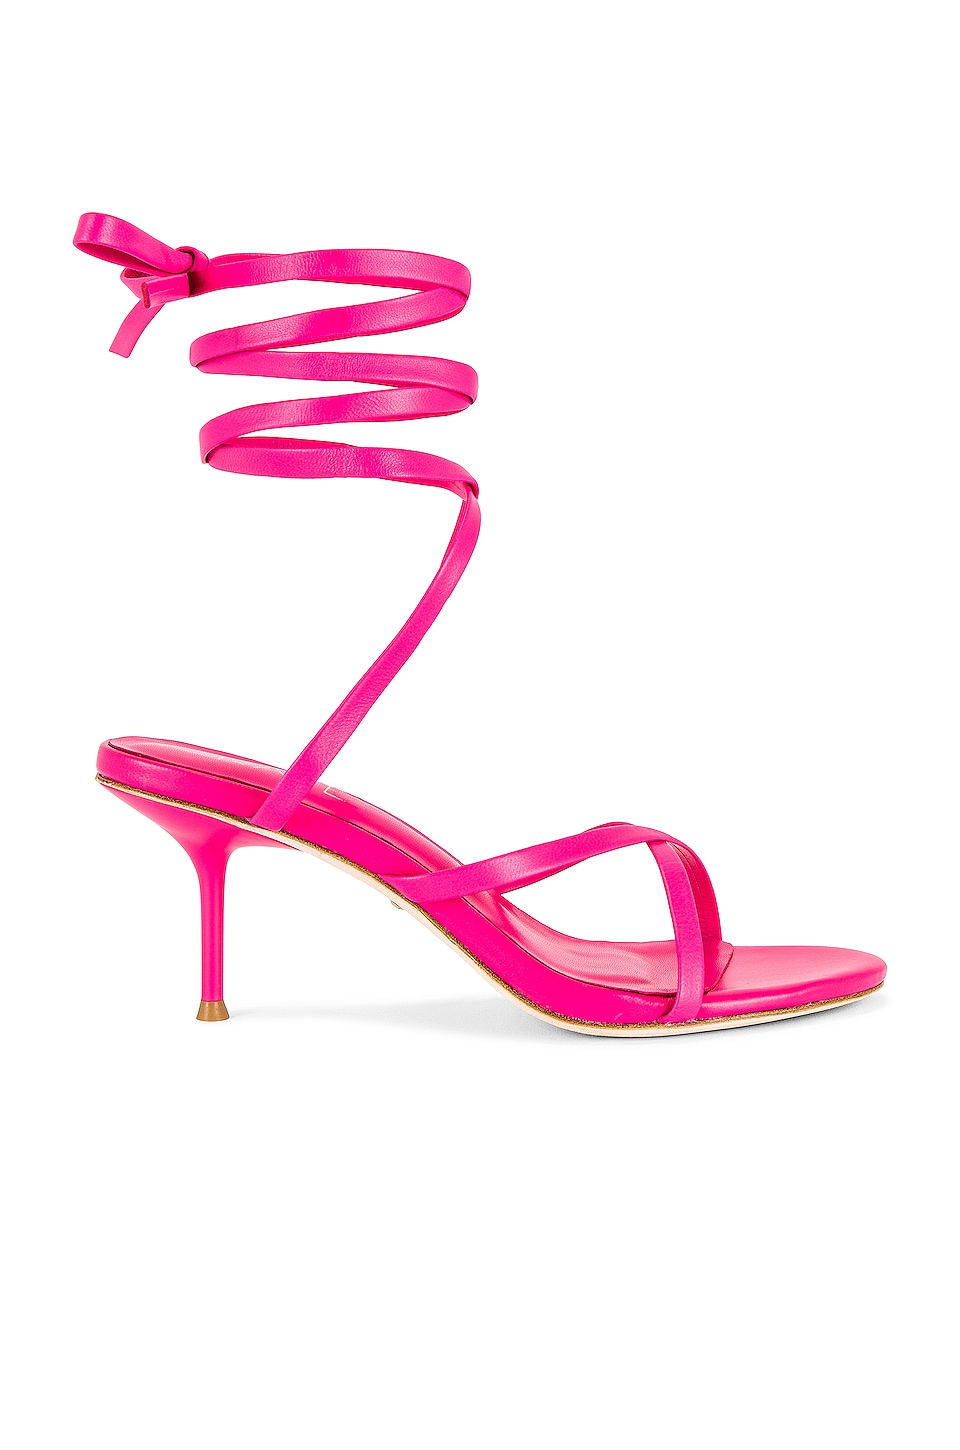 RAYE Schay Heel in Neon Pink | REVOLVE